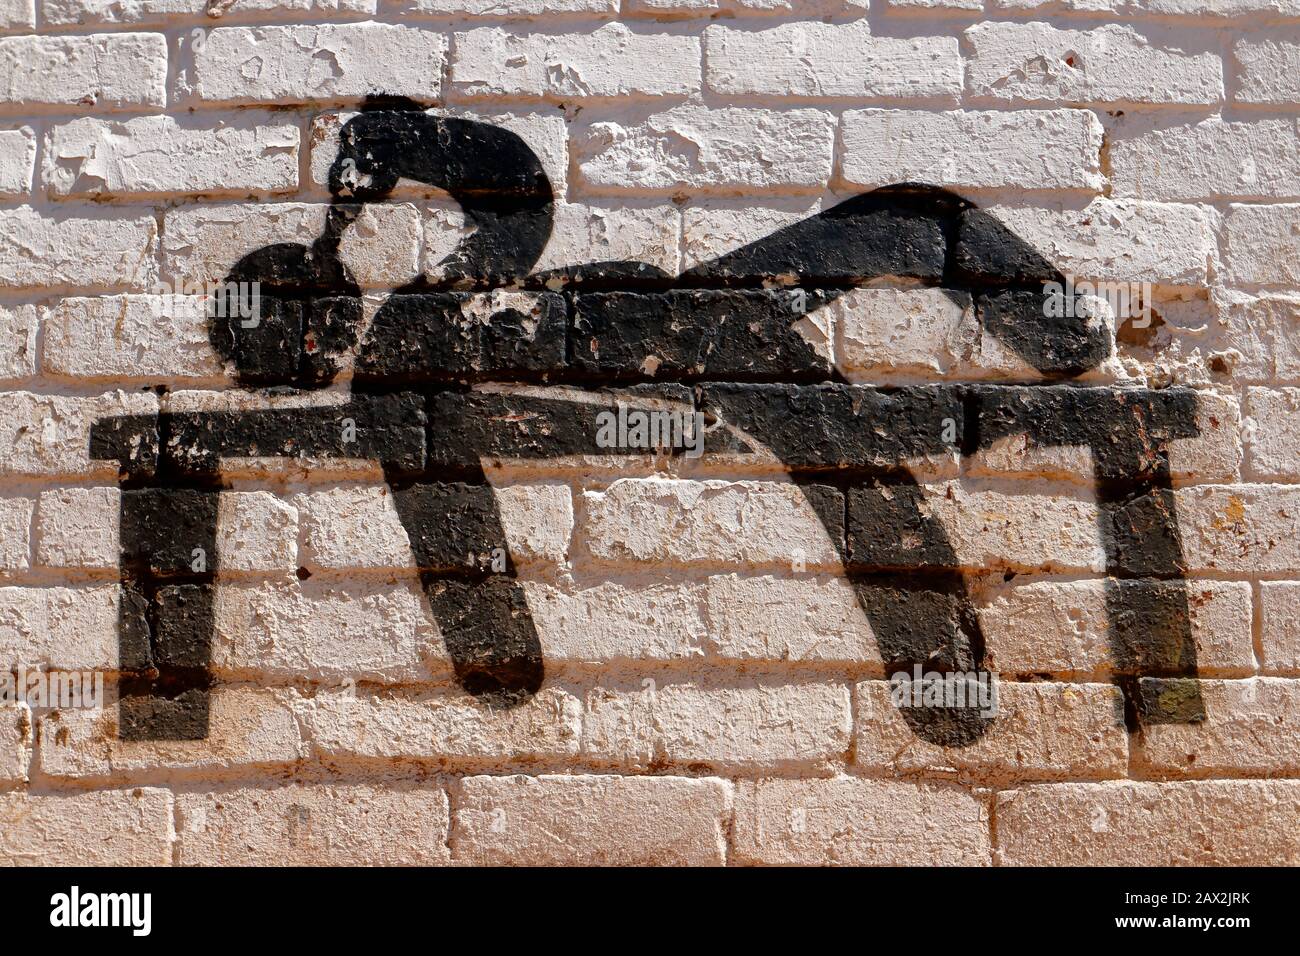 Mural de arte callejero en forma de silueta que representa a un hombre borracho acostado en un banco buscando consuelo y bebiendo en un estupor Foto de stock